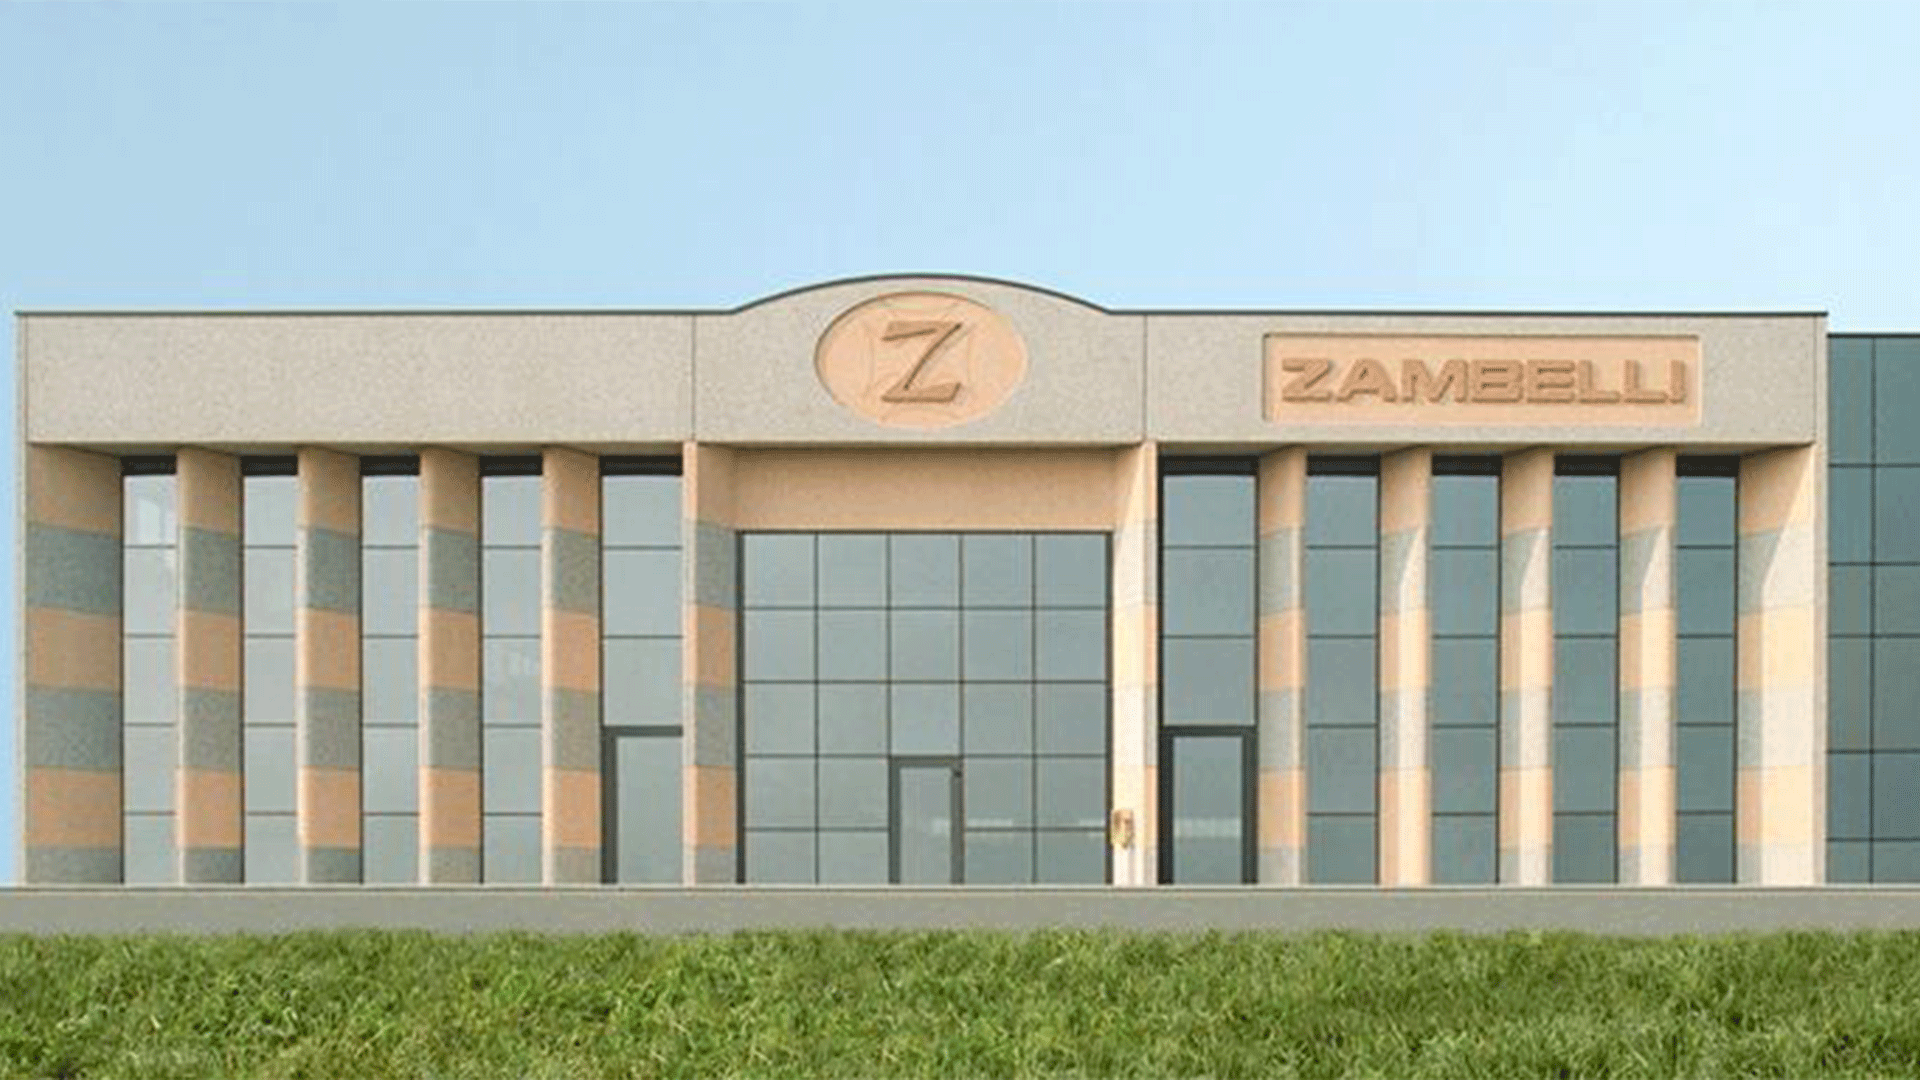 Zambelli headquarter